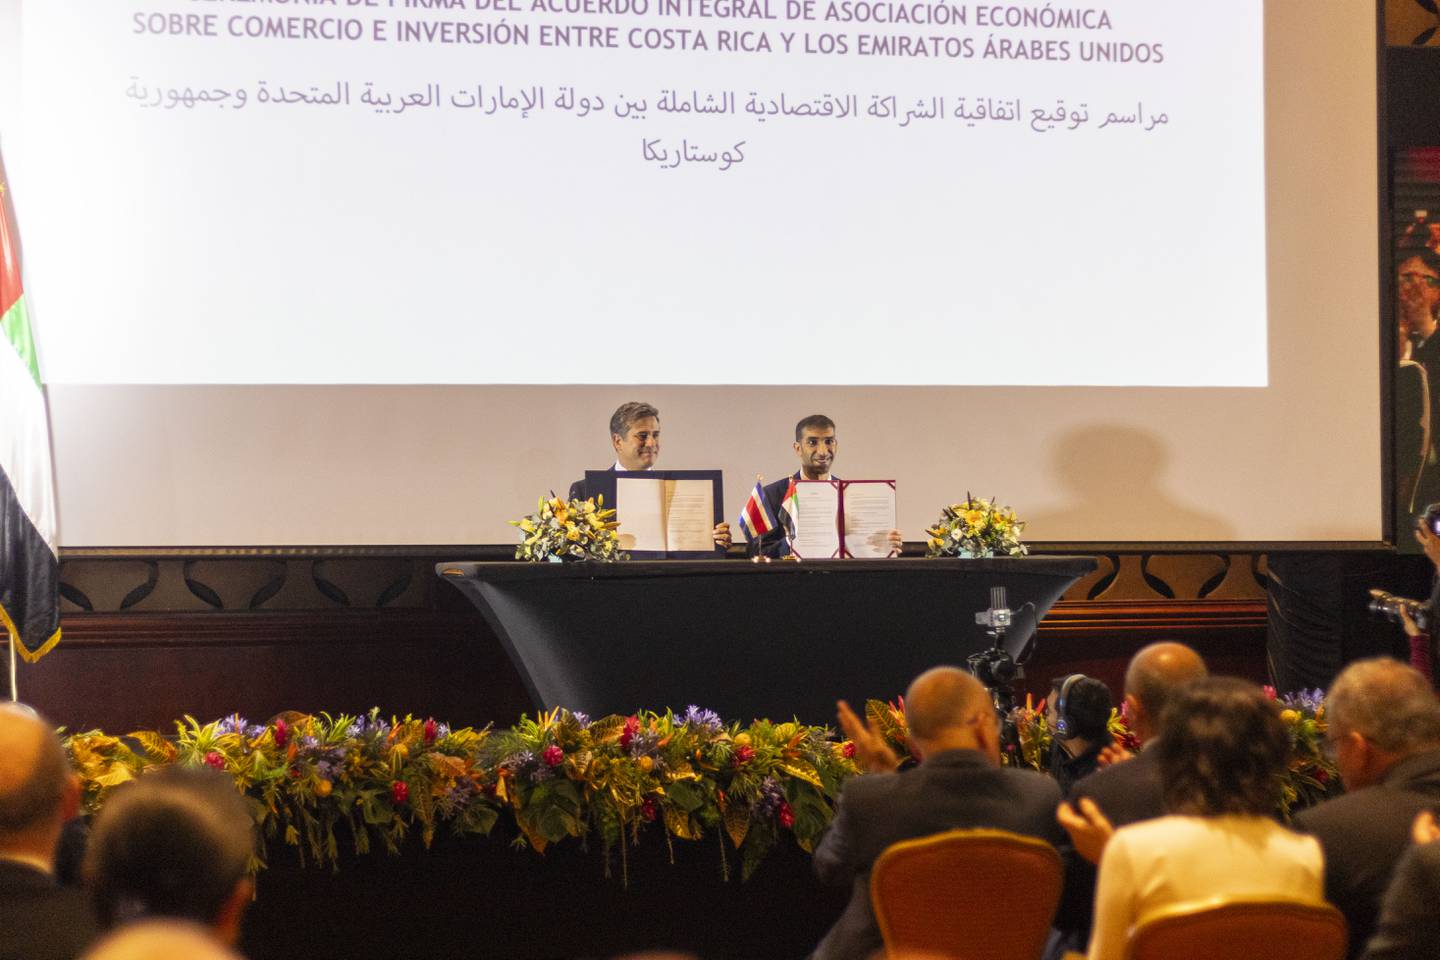 Ministro de Comercio exterior de los Emiratos Árabes Unidos, Dr. Thani bin Ahmed Al Zeyoudi junto al Ministro de Comercio Exteior de Costa Rica, Manuel TYovar Rivera